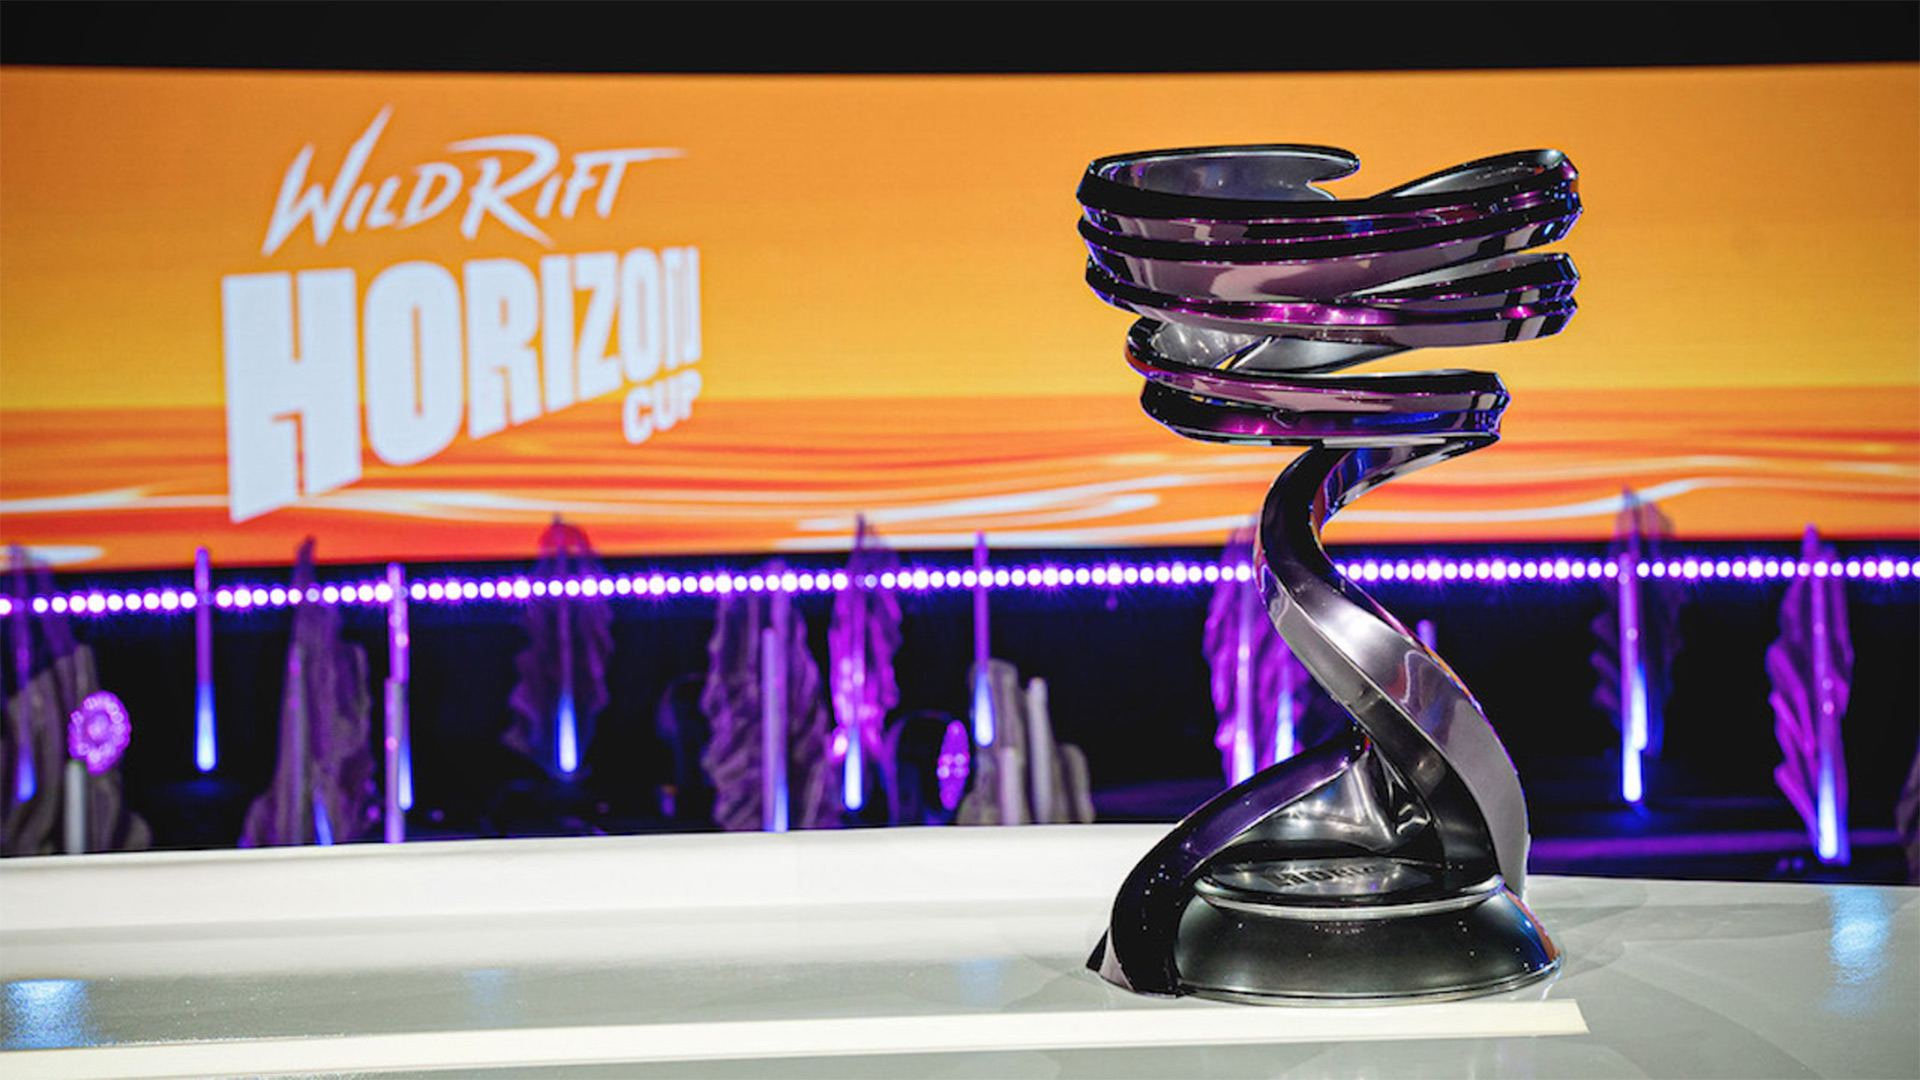 Der Wild Rift: Horizon Cup wird einen Preispool von 500.000 US-Dollar haben